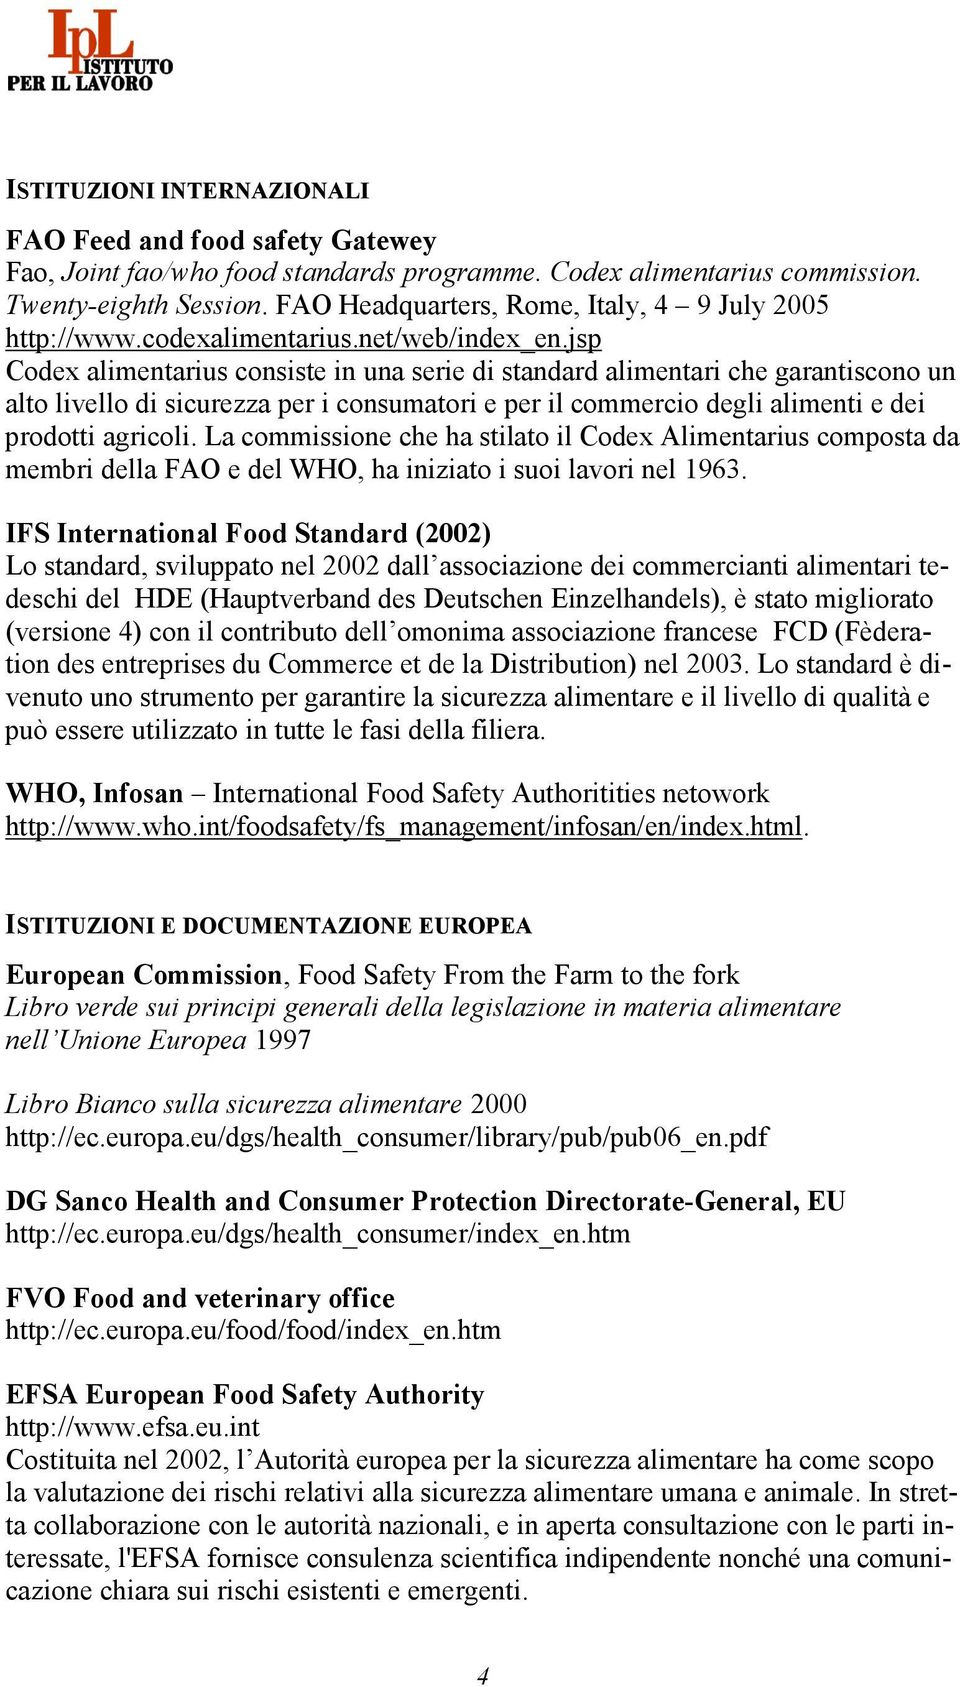 jsp Codex alimentarius consiste in una serie di standard alimentari che garantiscono un alto livello di sicurezza per i consumatori e per il commercio degli alimenti e dei prodotti agricoli.